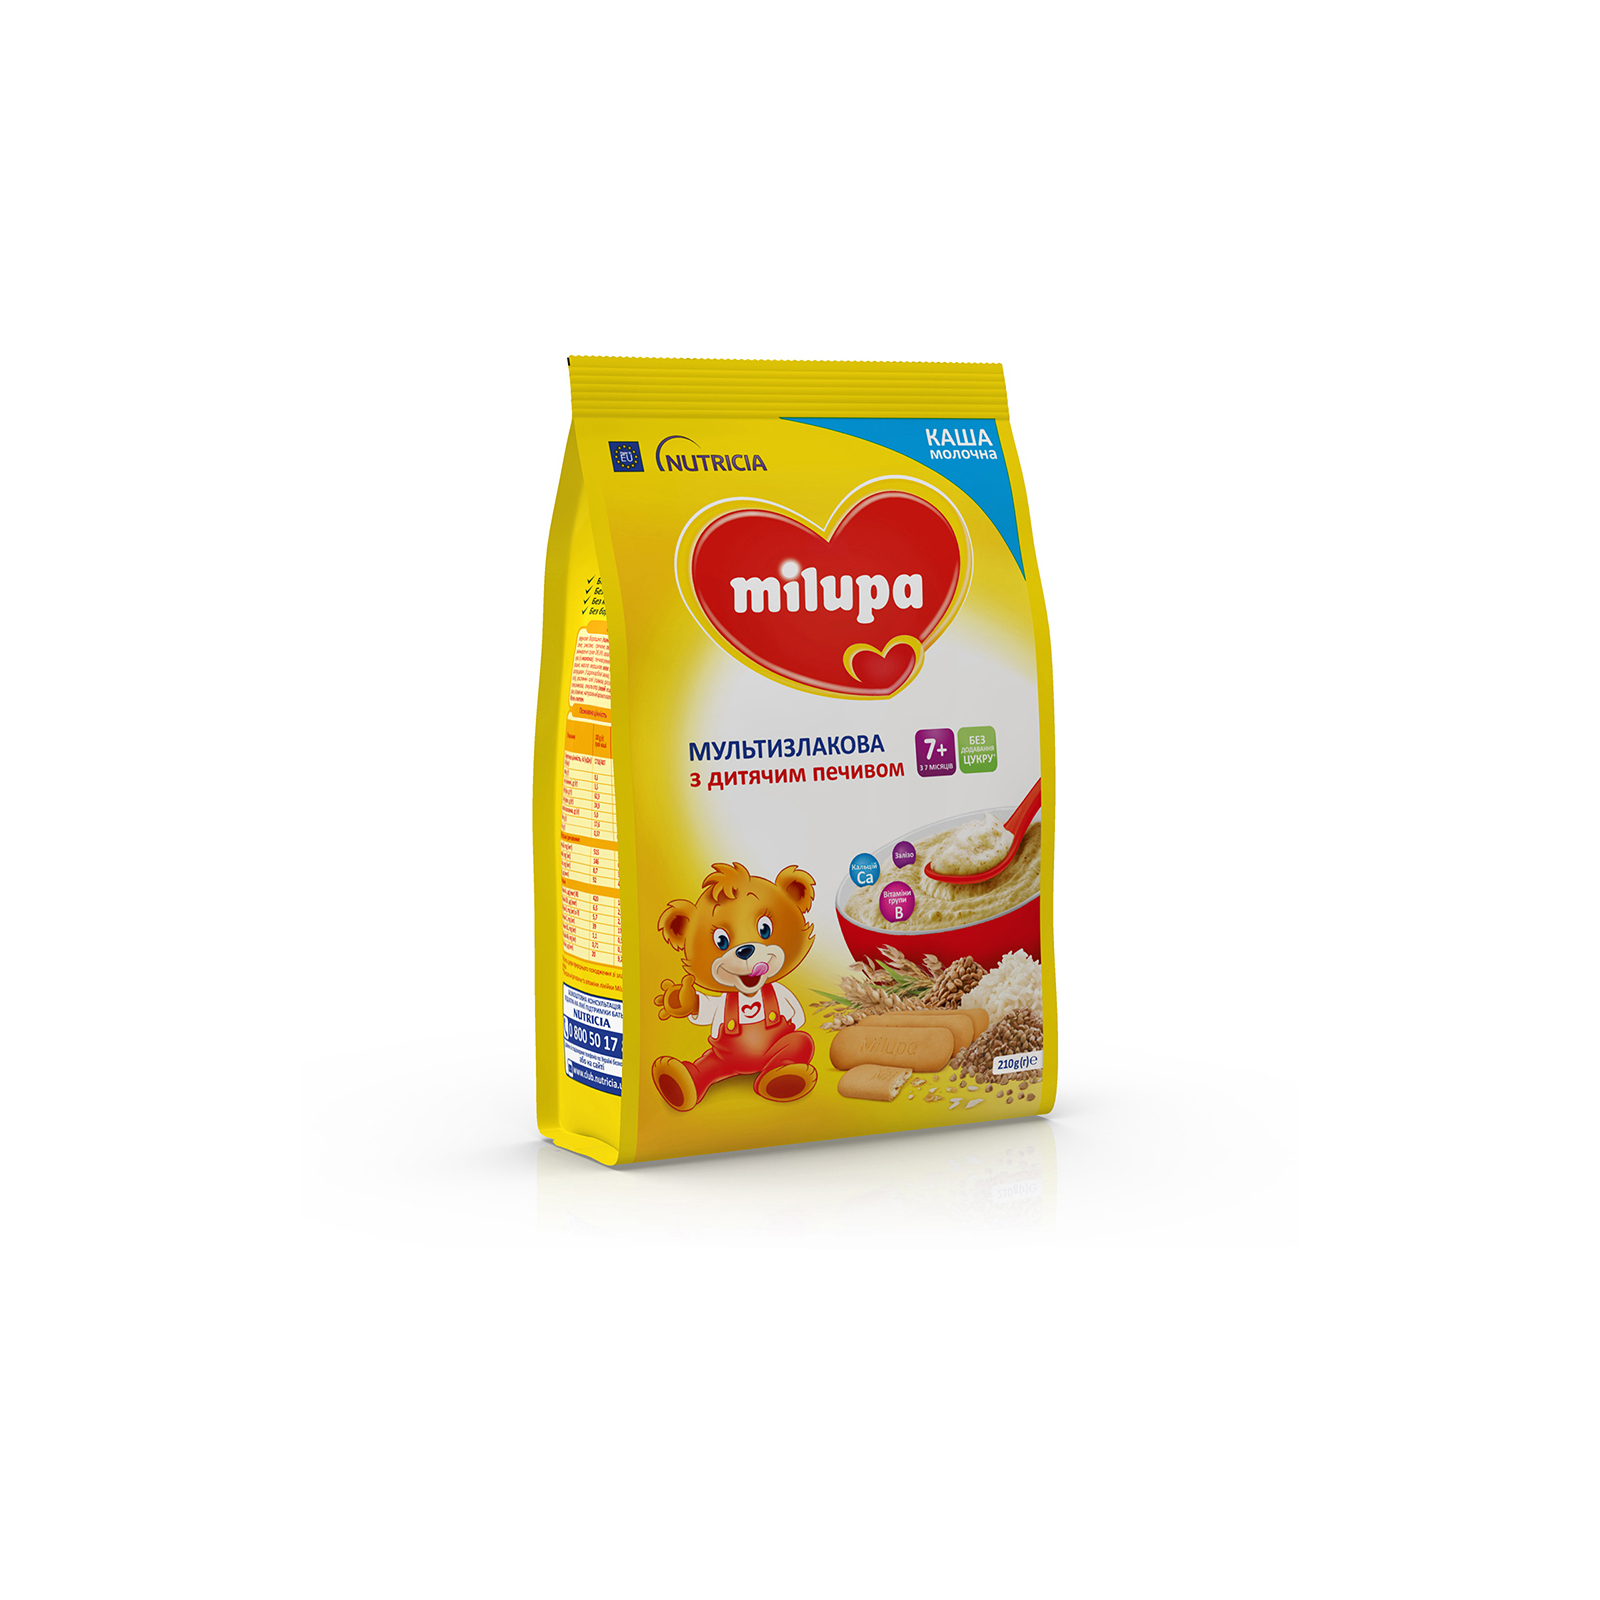 Детская каша Milupa молочная Мультизлаковая с детским печеньем 210 г (5900852931161) изображение 5